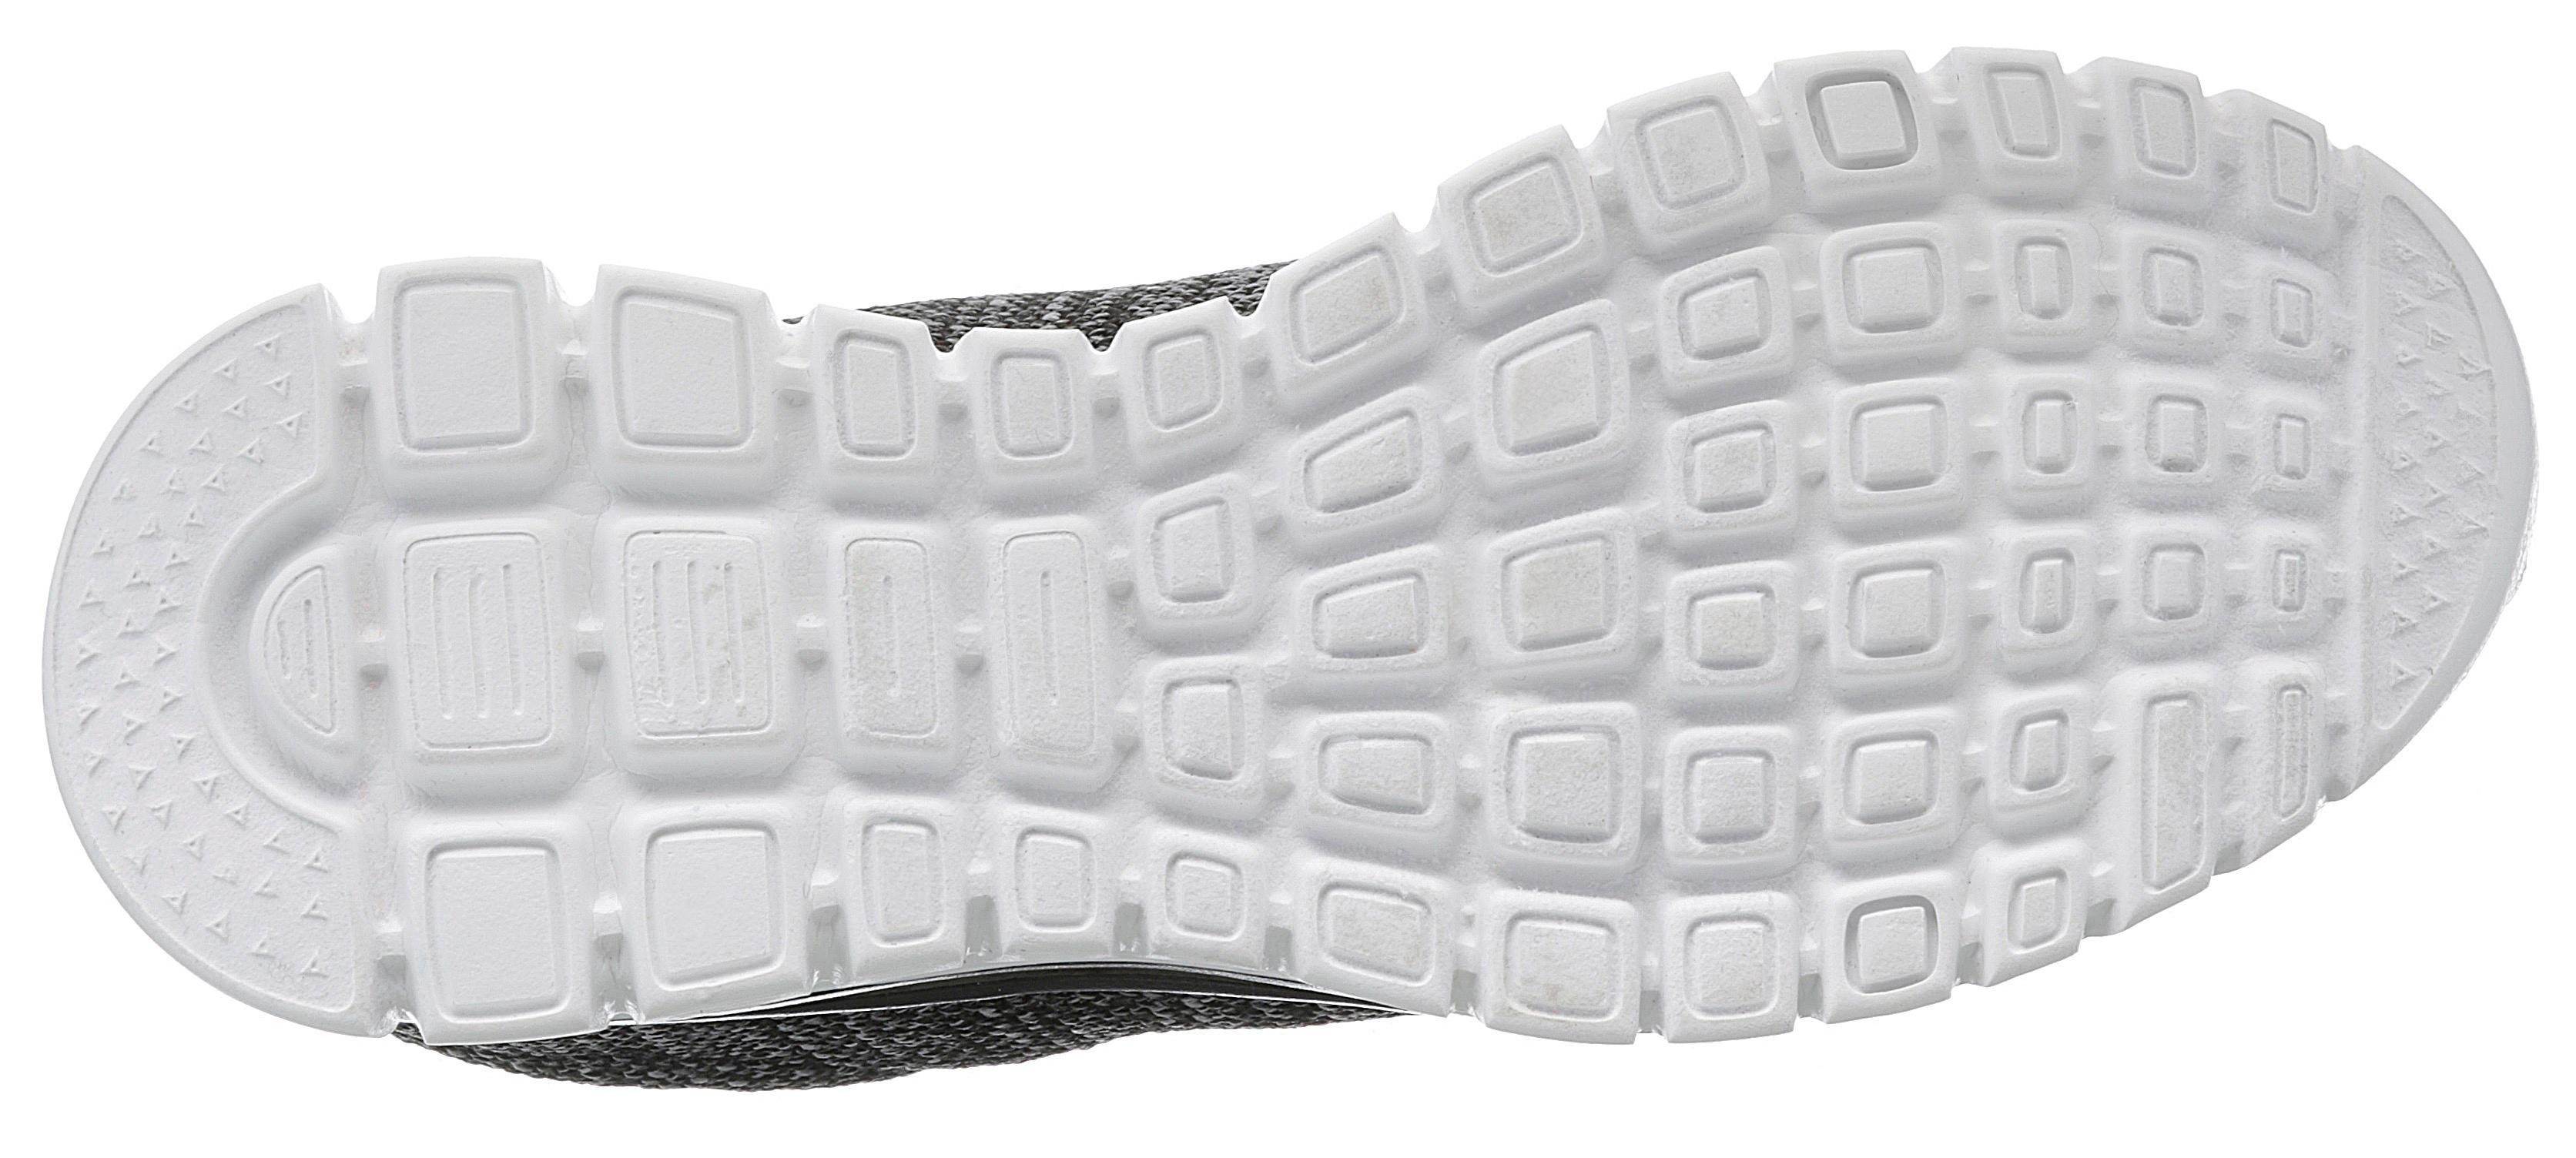 Fortune Graceful Twisted mit Sneaker Skechers Memory - schwarz-weiß Foam